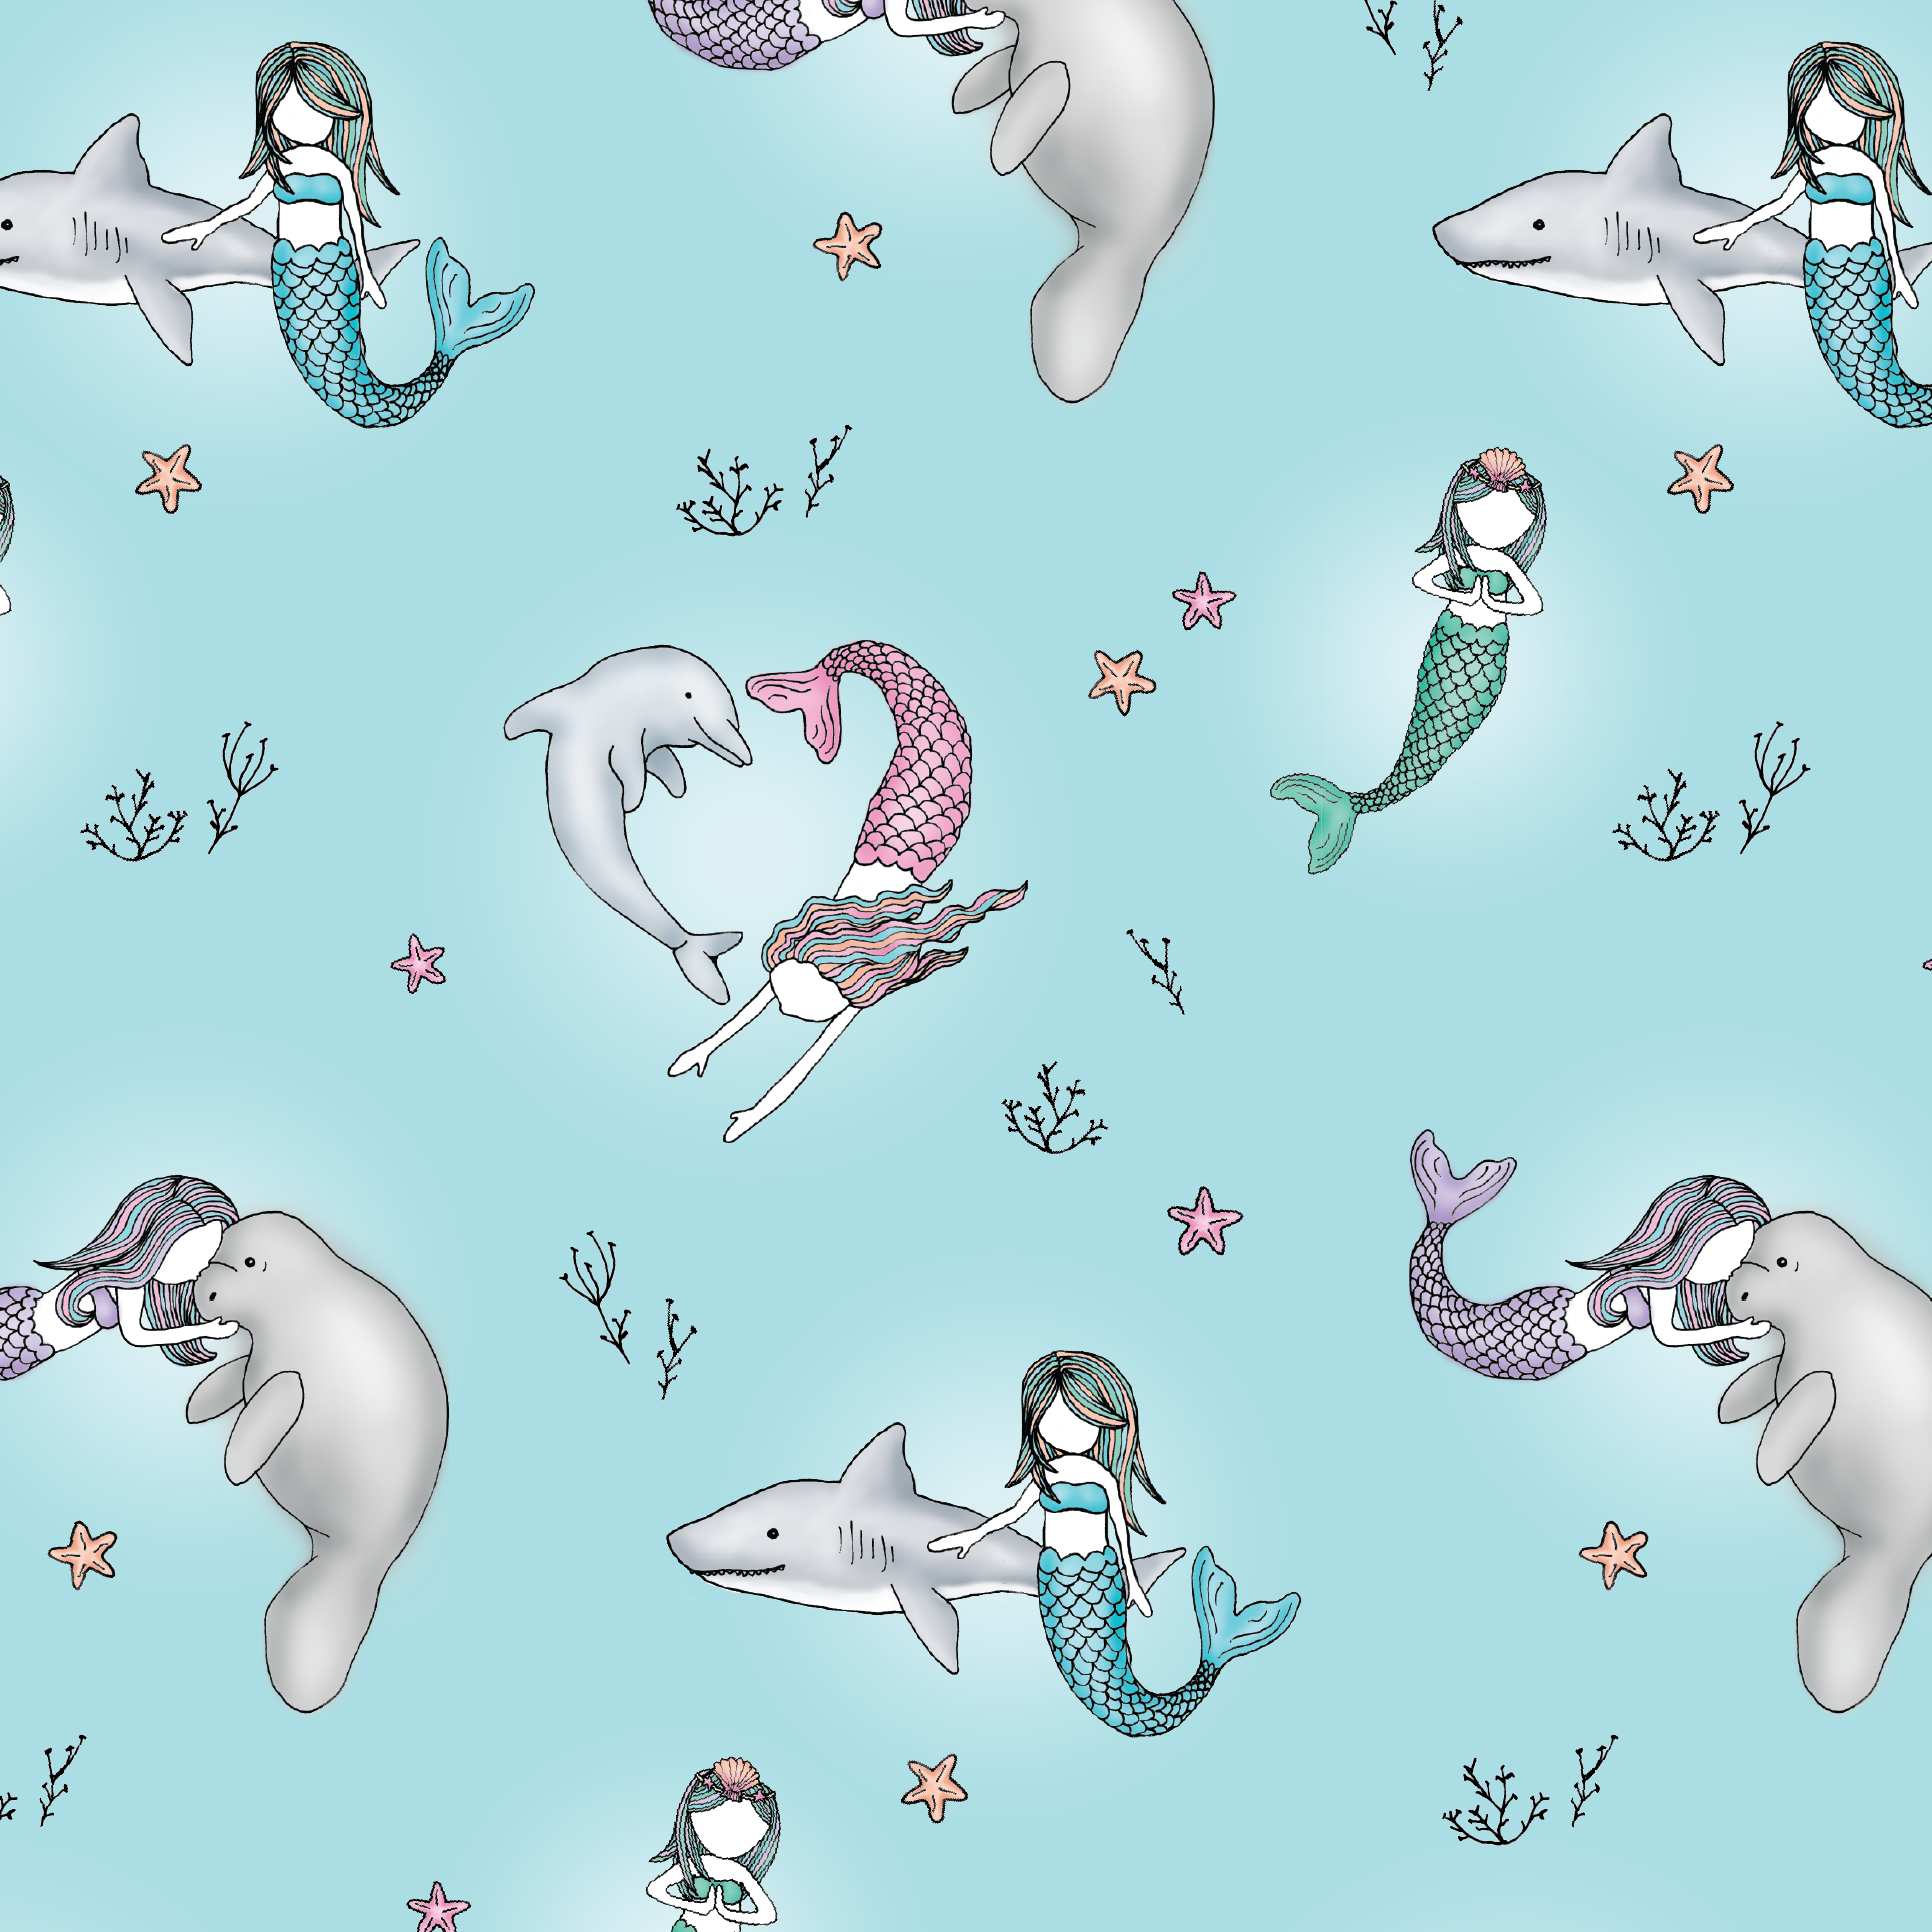 mermaid_pattern-01.png